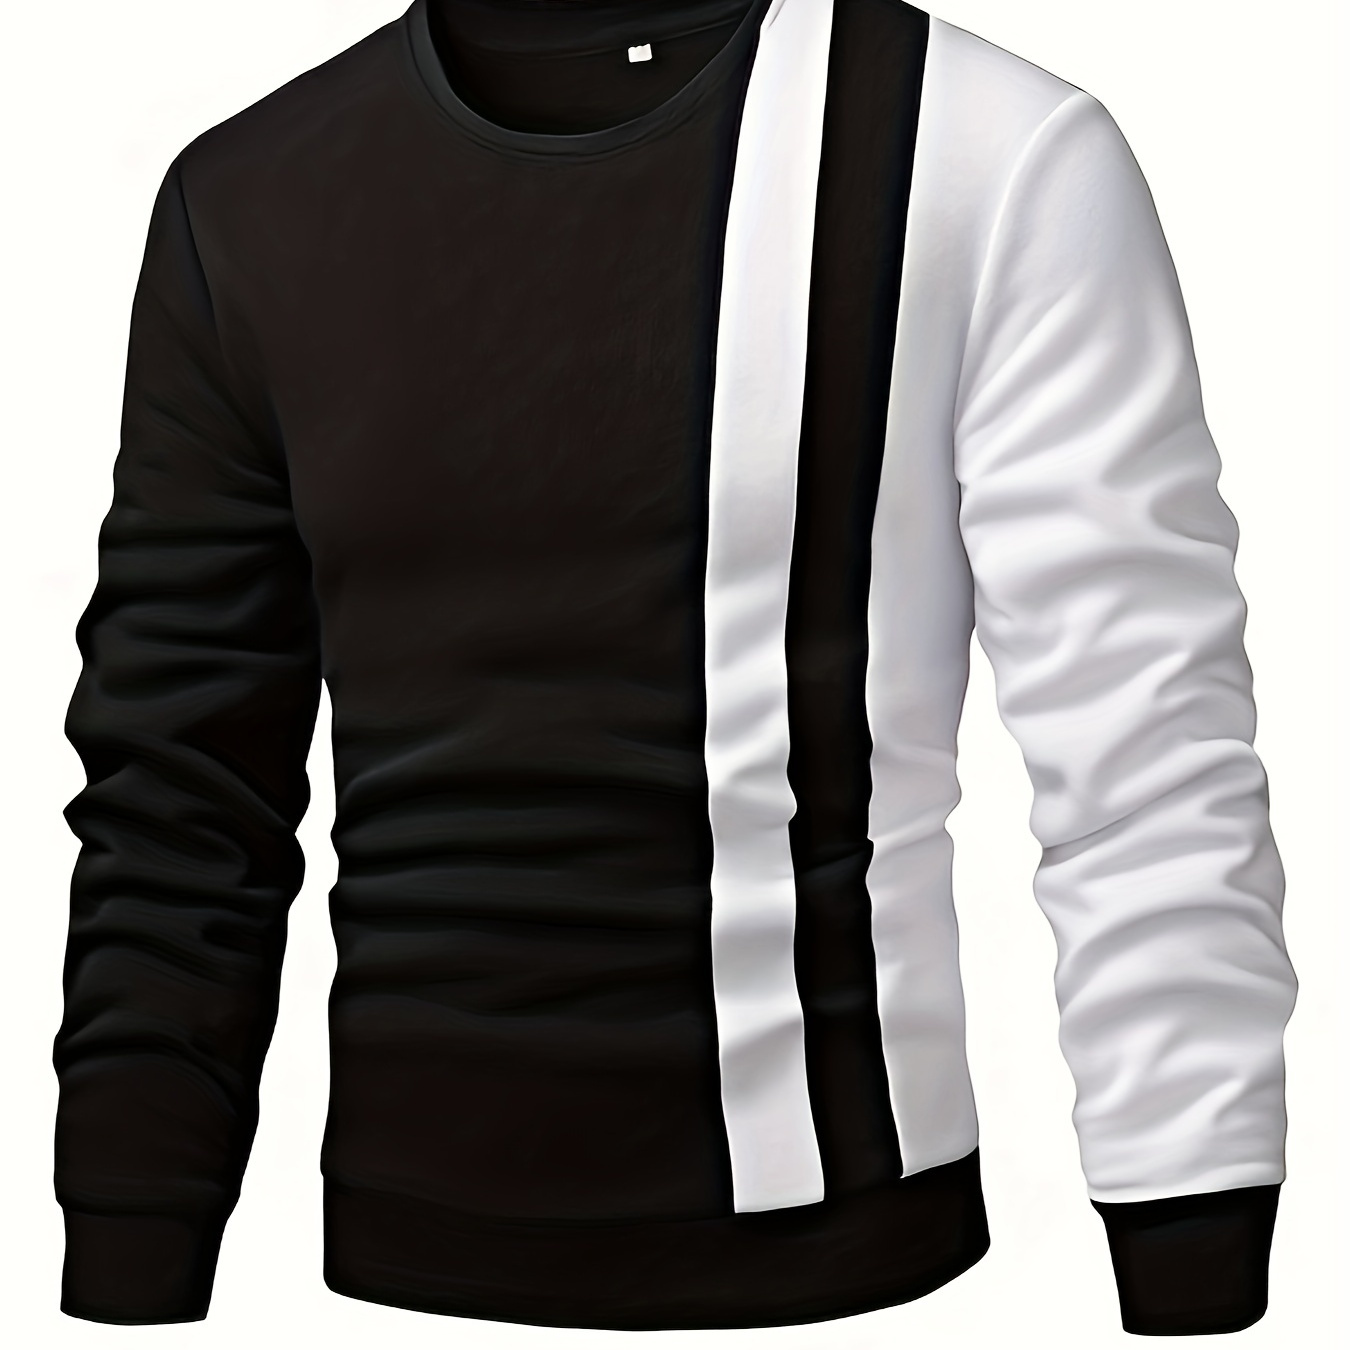 

Color Block Trendy Sweatshirt, Men's Casual Creative Design Crew Neck Sweatshirt For Men Fall Winter